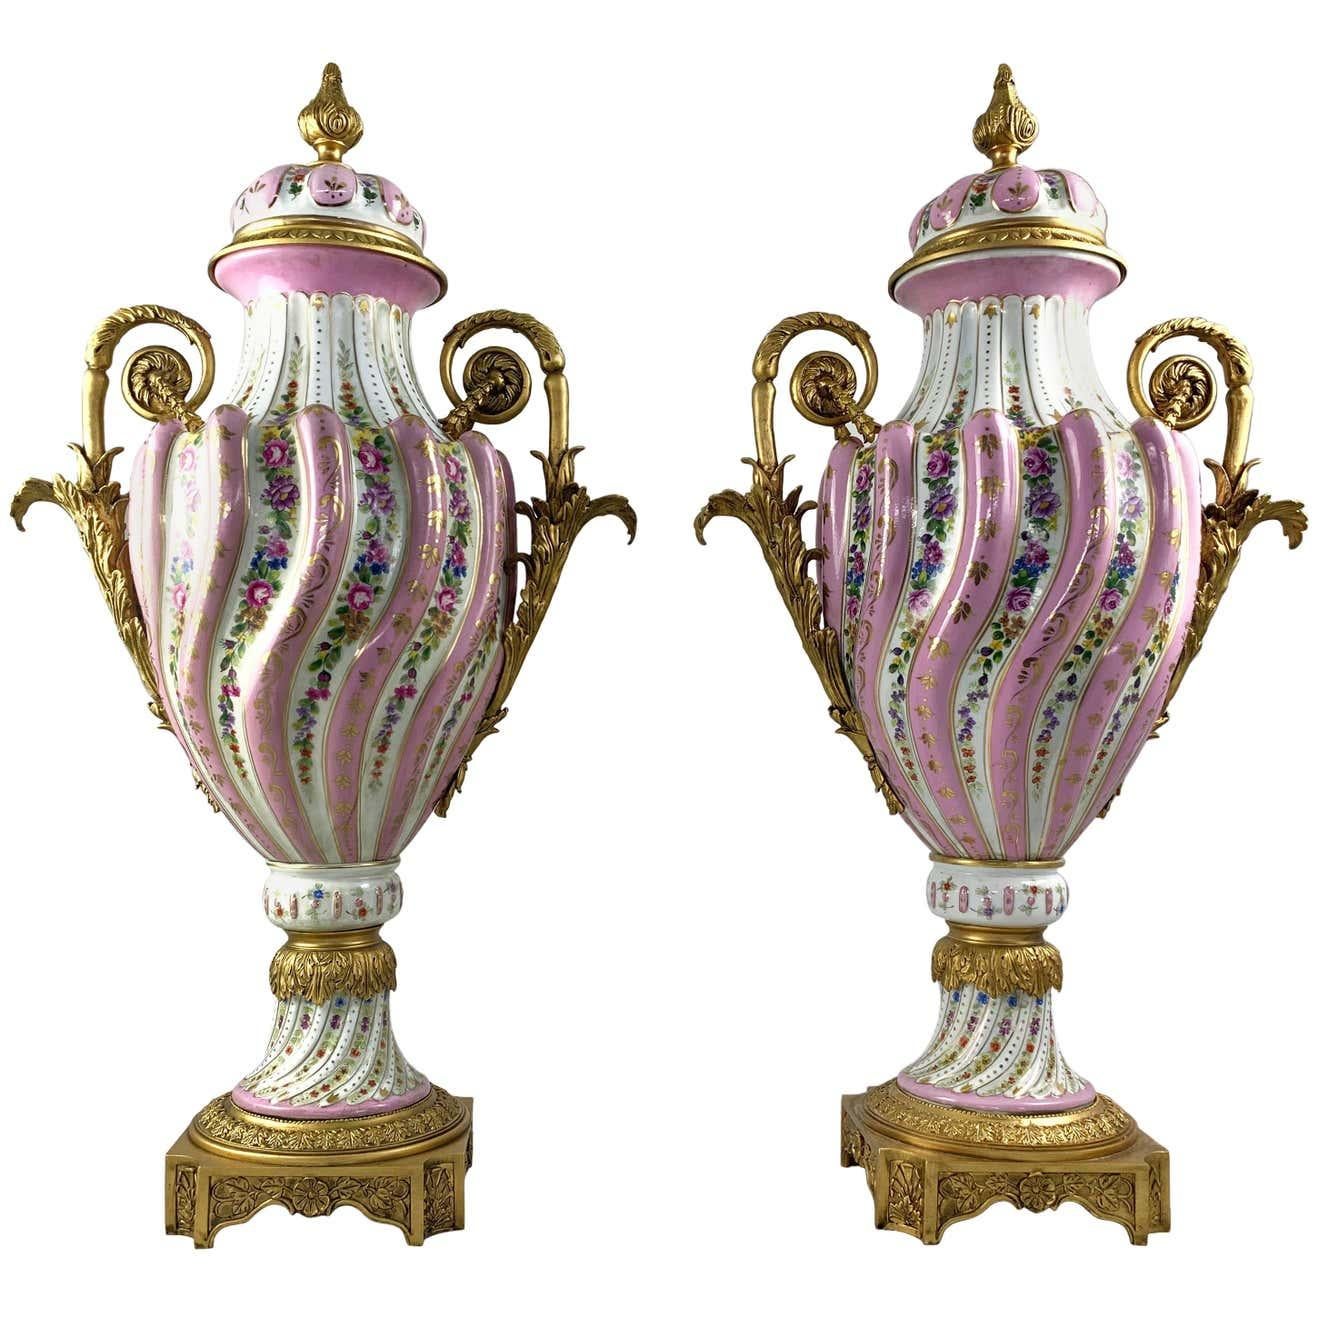 Ein feines Paar zweiflügelige Vasen und Deckel aus Porzellan im Sevres-Stil mit Ormolu-Beschlägen. 19. Jahrhundert. Jeweils mit spiralförmigem, gelapptem Dekor, das mit Blumen auf rosa Grund verziert ist. Die Beschläge sind mit klassischen Motiven